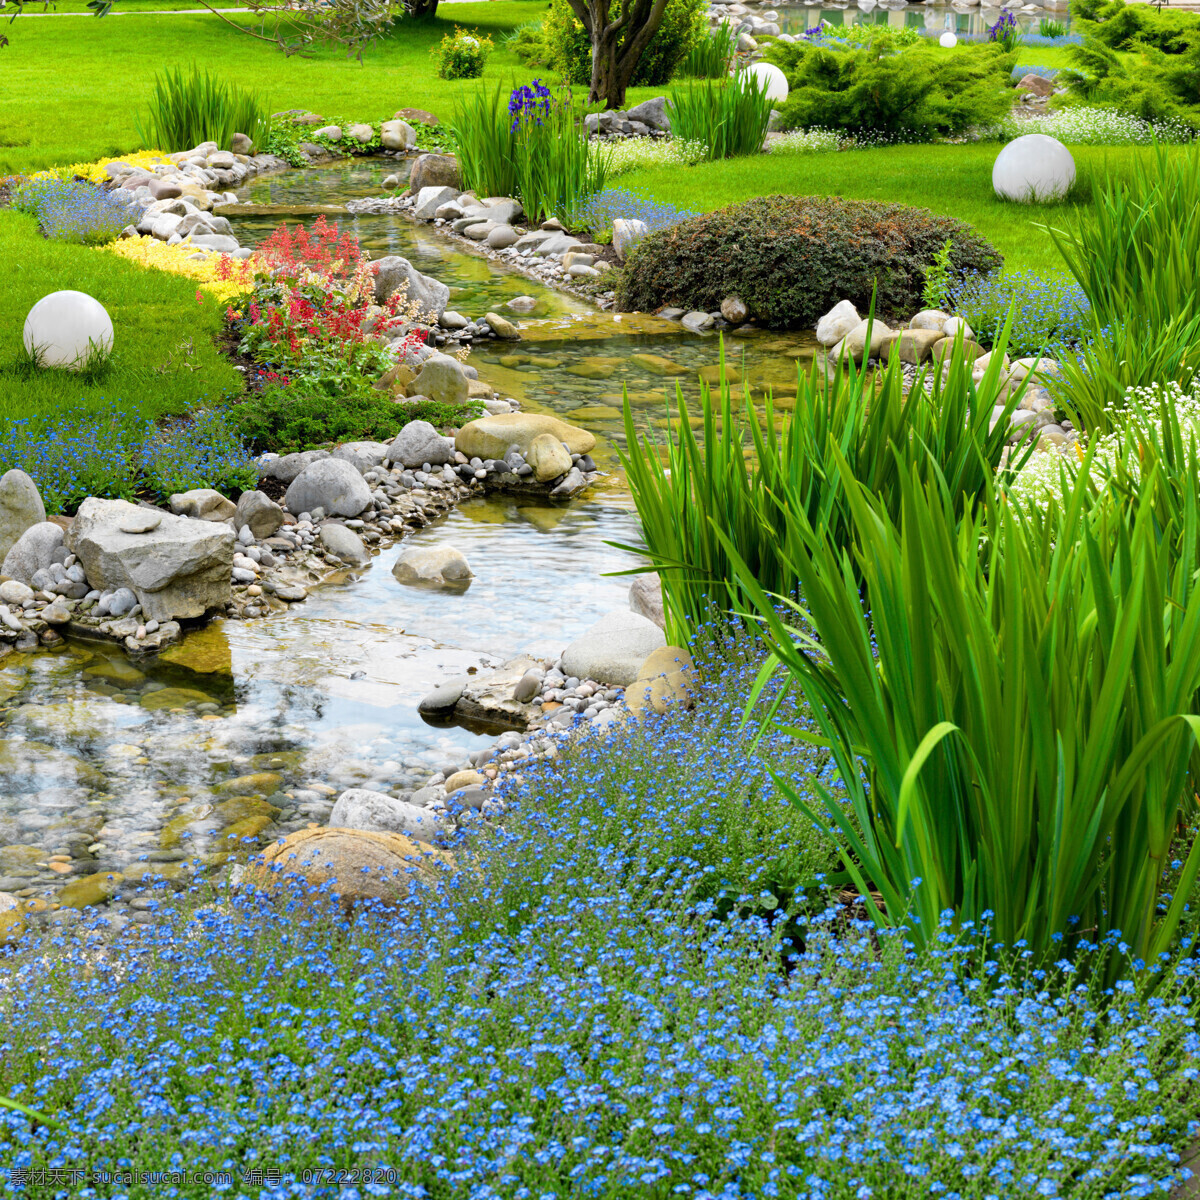 美丽 小溪 植物 风景 美丽花园风景 小溪风景 园艺风景 园艺植物 植物花卉 美丽鲜花 草地 草坪 自然风景 自然景观 绿色